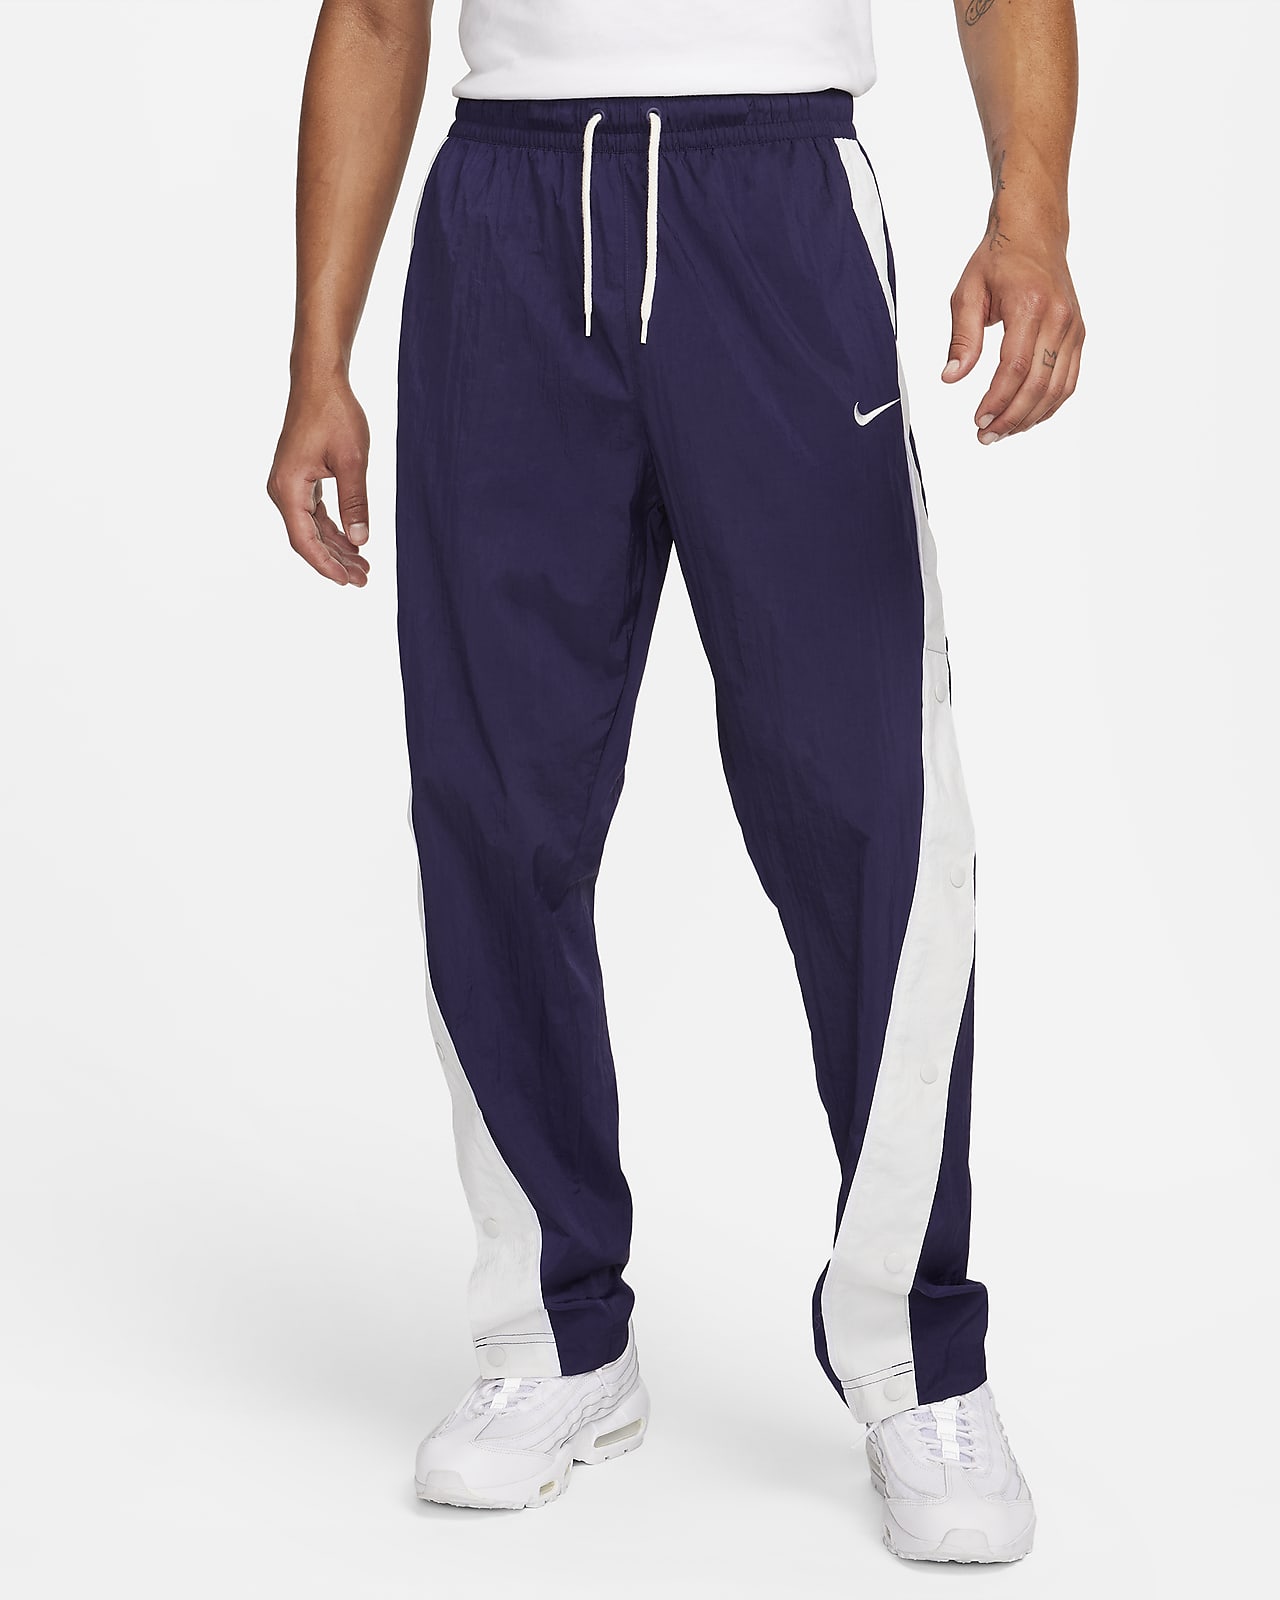 Pánské tkané basketbalové kalhoty Nike